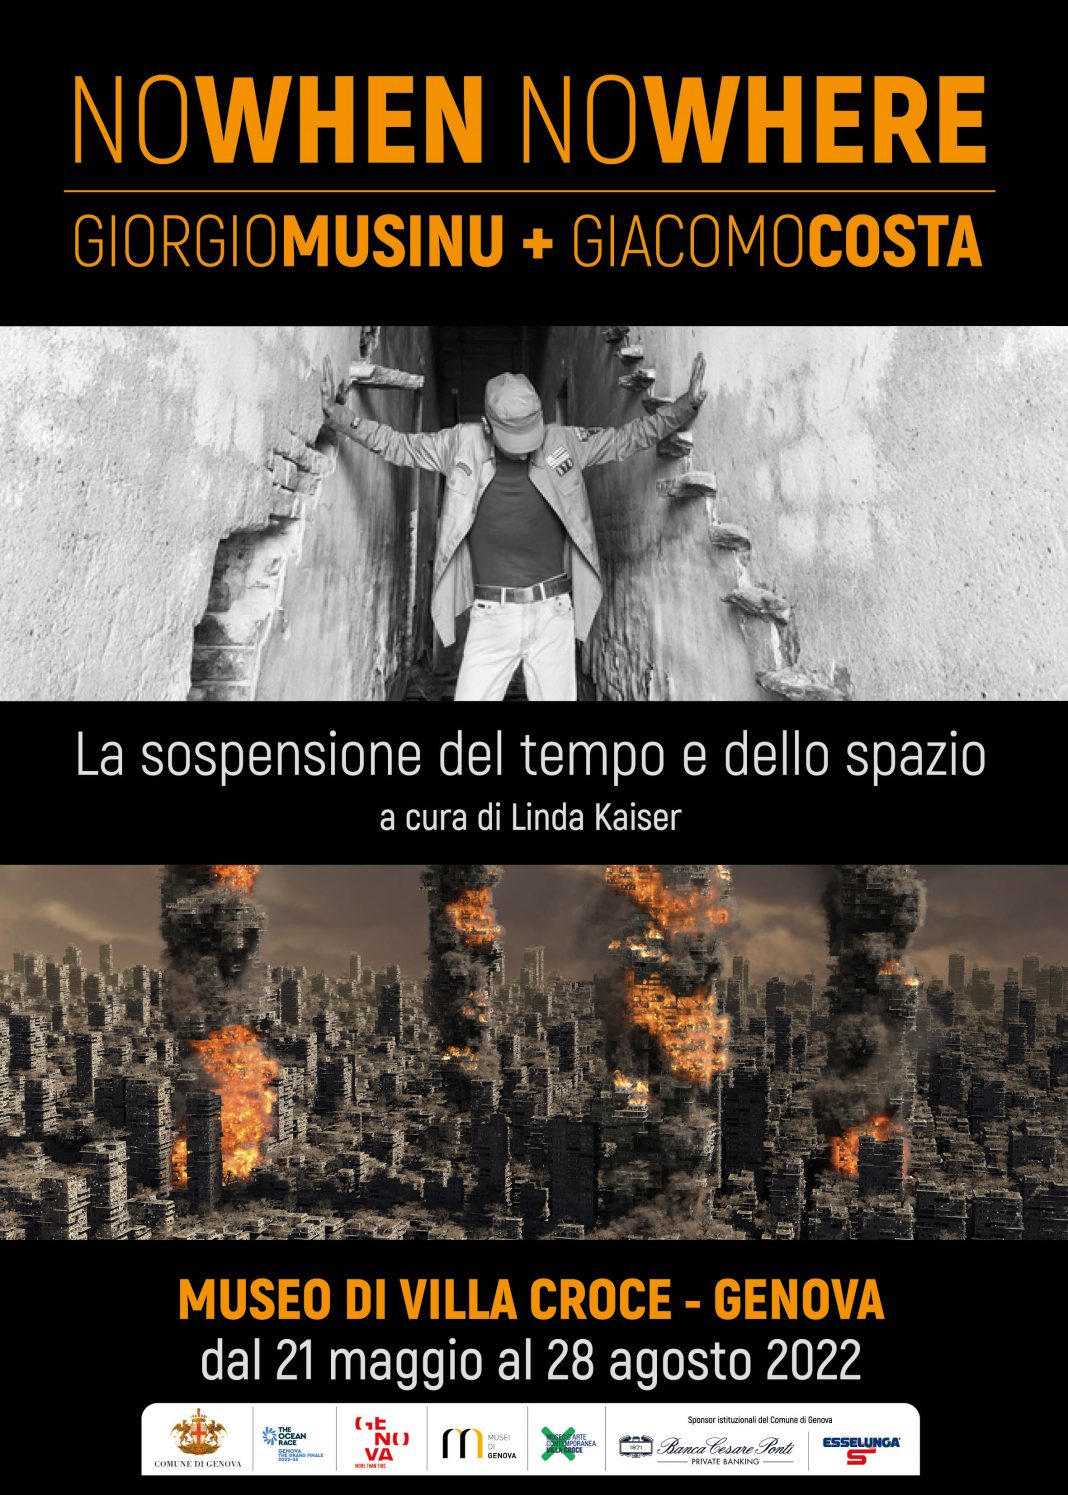 Giorgio Musinu / Giacomo Costa – Nowhen Nowhere. La sospensione del tempo e dello spaziohttps://www.exibart.com/repository/media/formidable/11/img/e91/NOWHEN-NOWHERE-MusinuCosta-2022-Manifesto-100x140-1068x1495.jpg